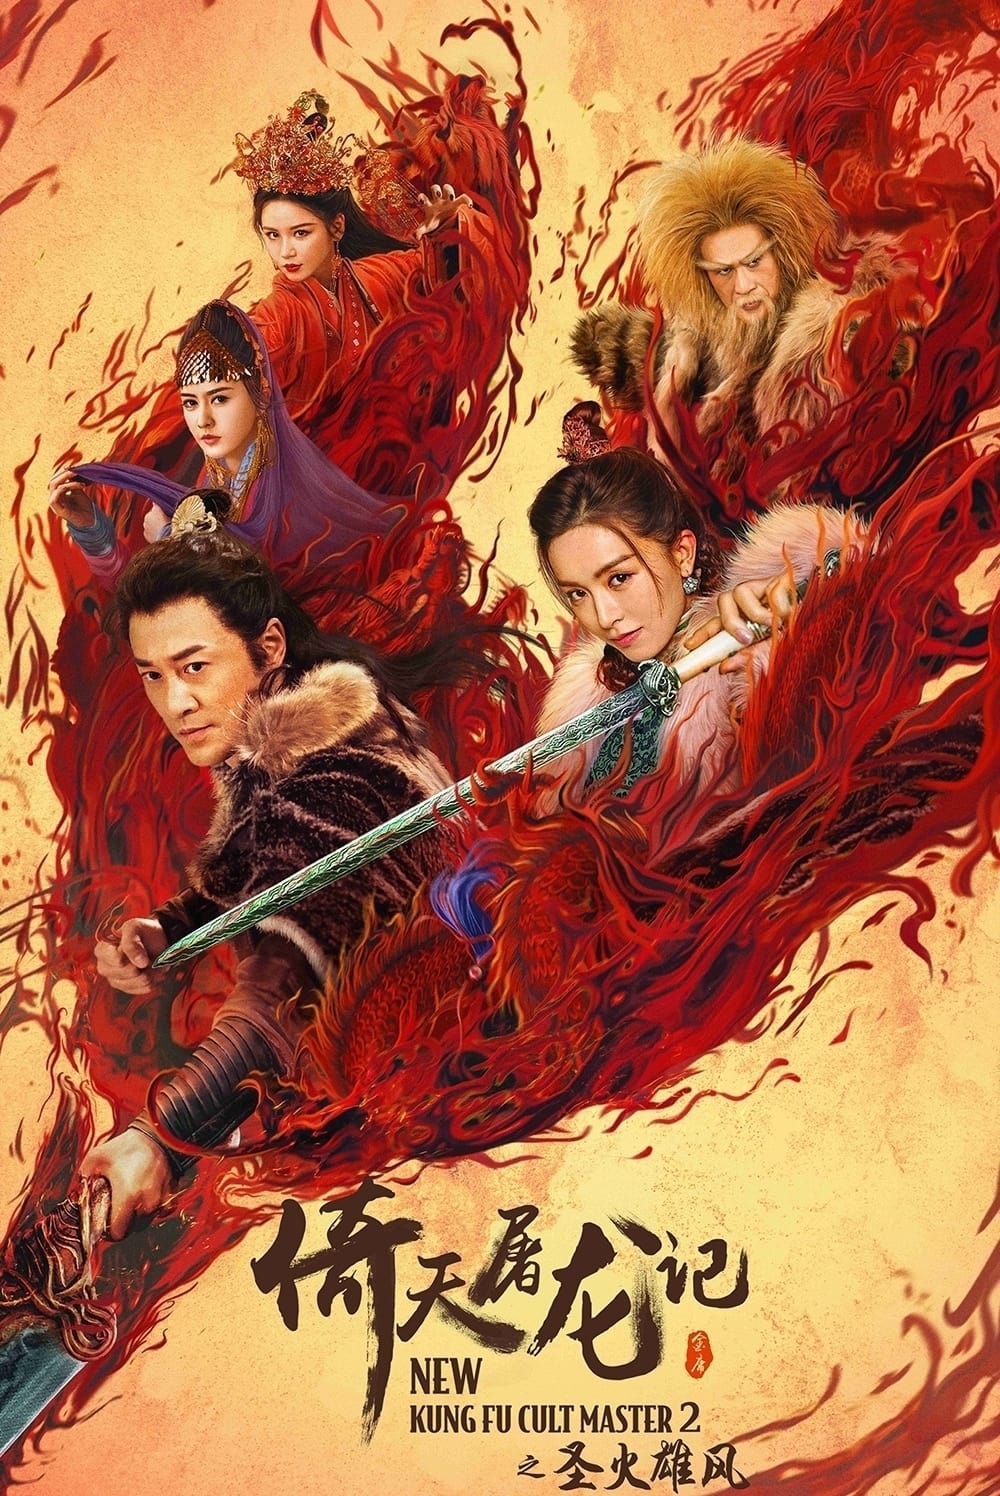 Ỷ Thiên Đồ Long Ký: Thánh Hỏa Hùng Phong - New Kung Fu Cult Master ⅠⅠ